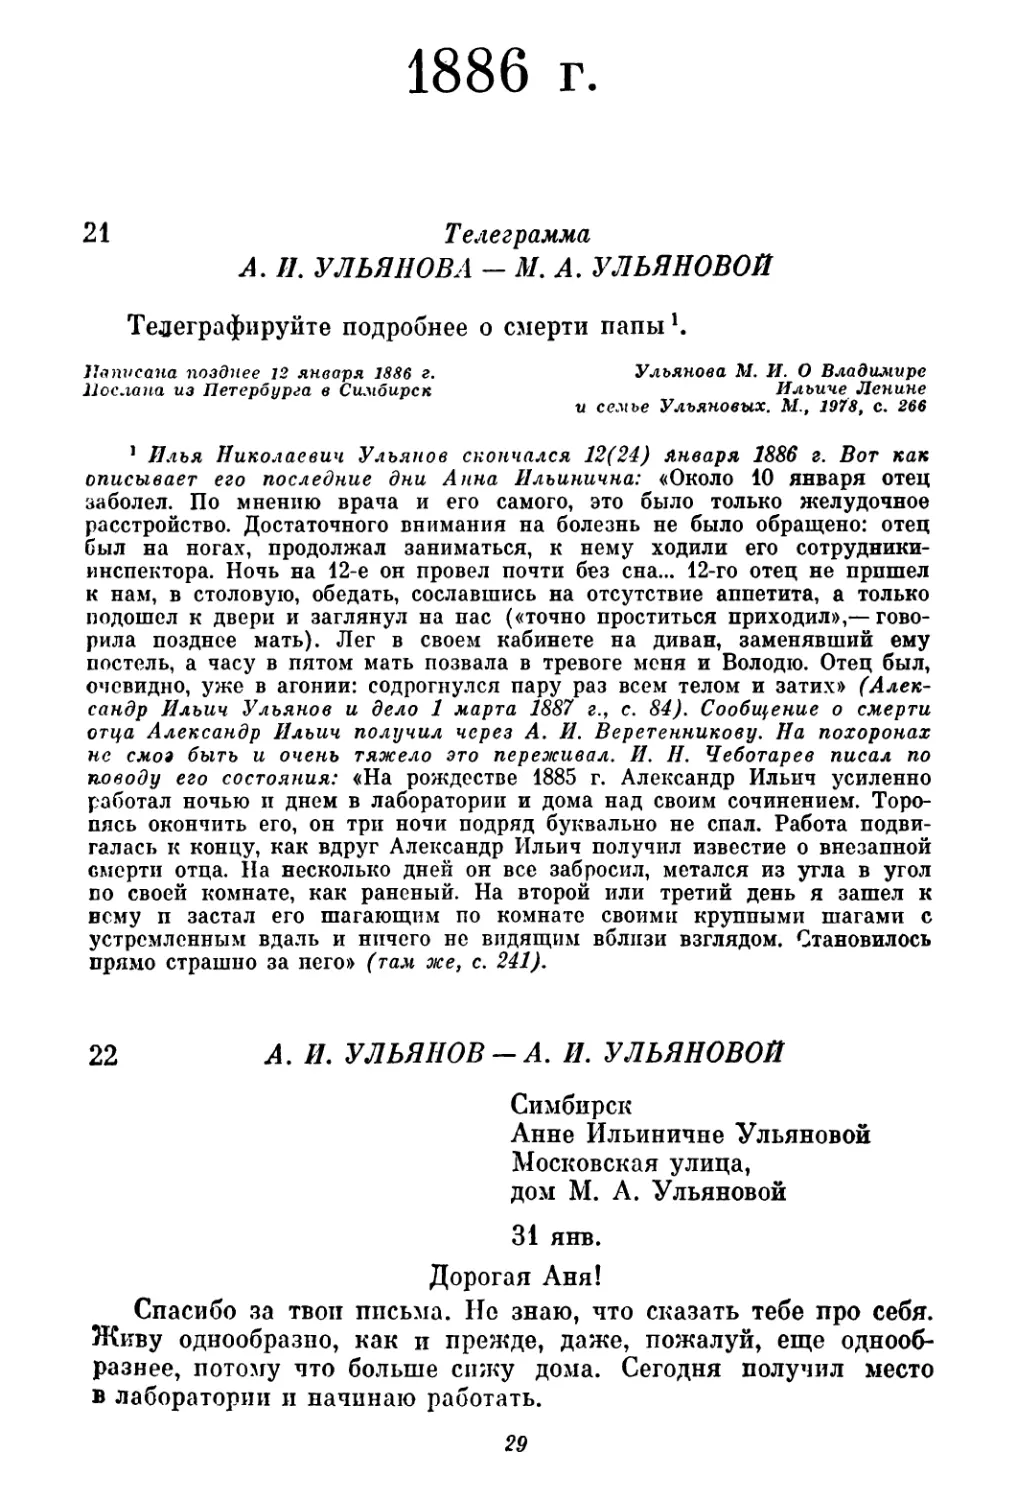 1886 г.
22. А. И. Ульянов — А. И. Ульяновой. 31 января